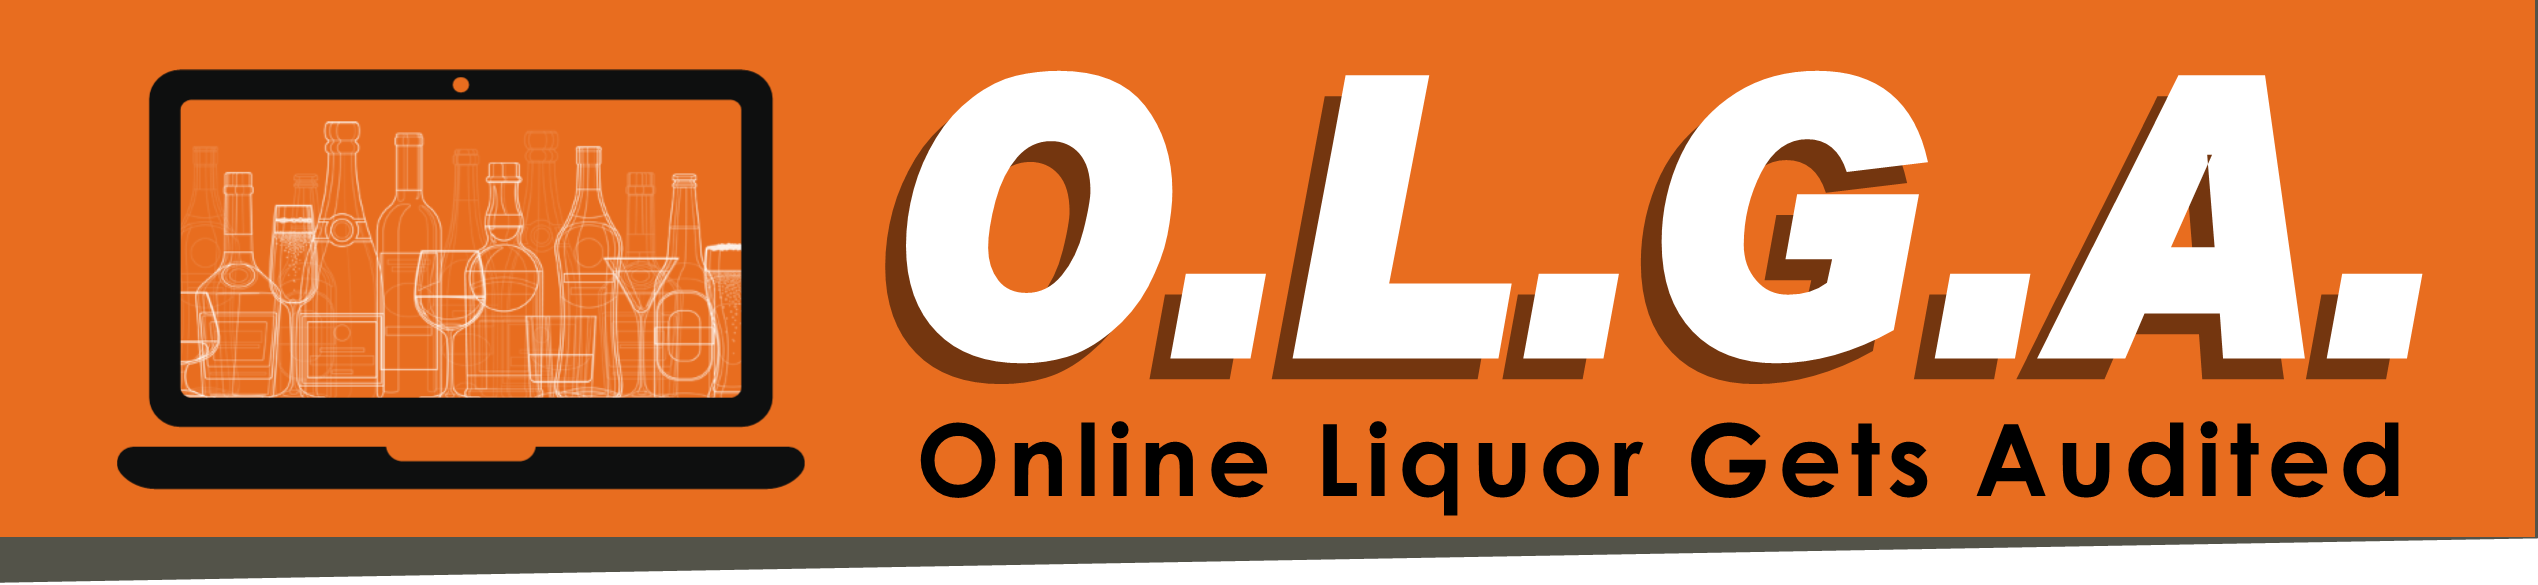 Online Liquor Gets Audited Image